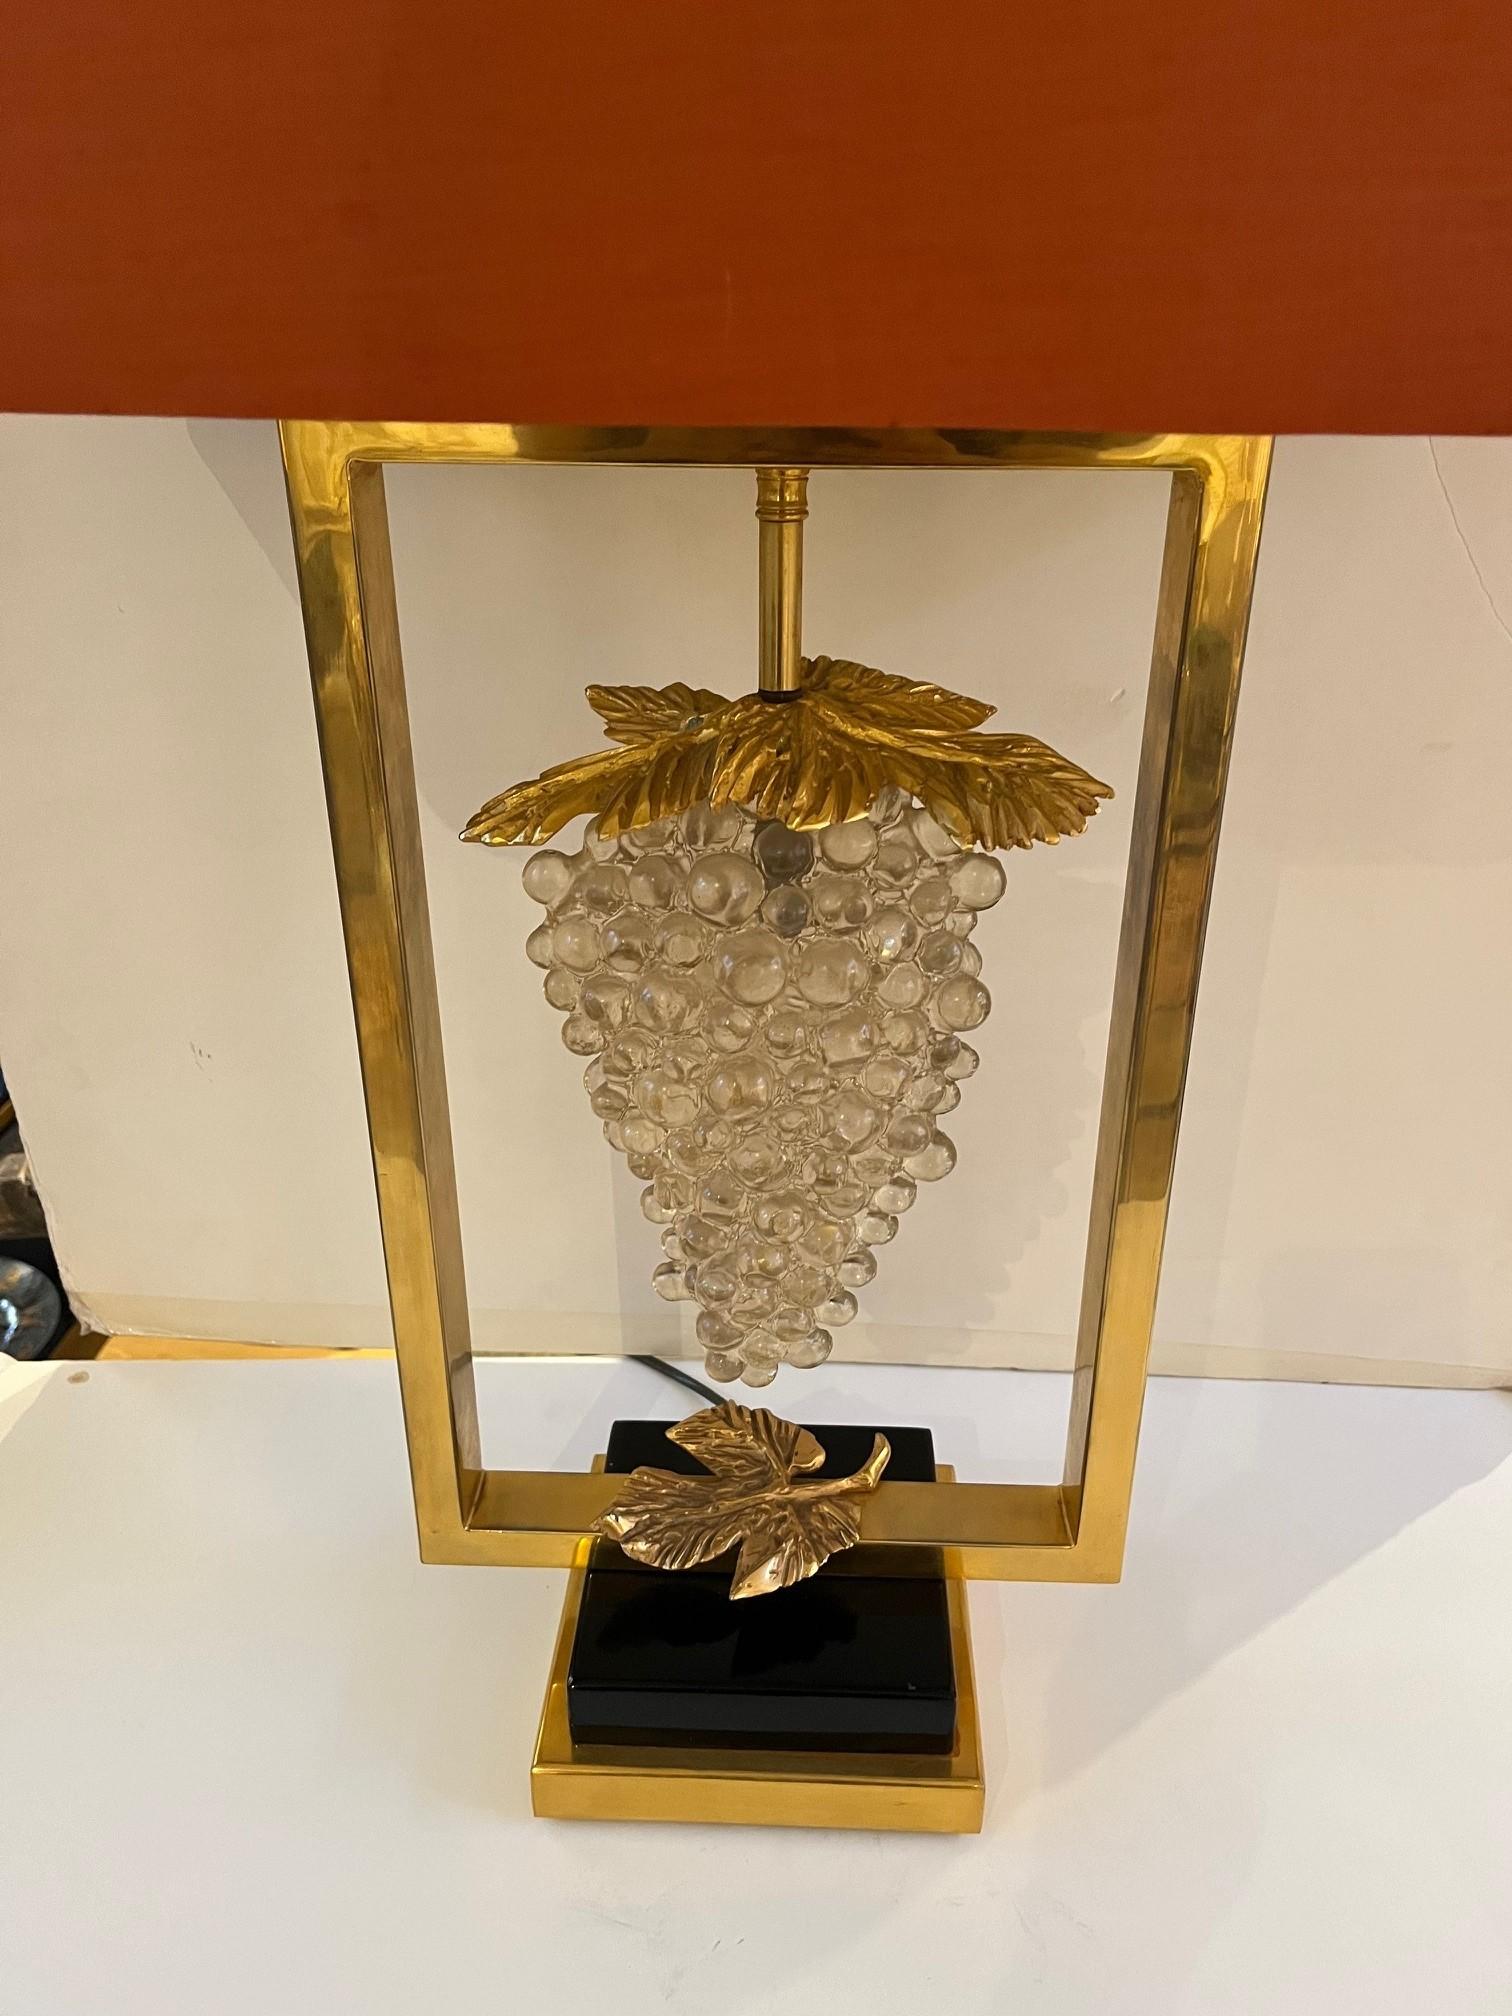 Grande lampe de table vintage en bronze doré avec grappe de raisin en verre de Murano et volumineux abat-jour en lin orange brûlé inclus, abat-jour laminé avec feuille d'or, petite tache d'eau sur la face avant.